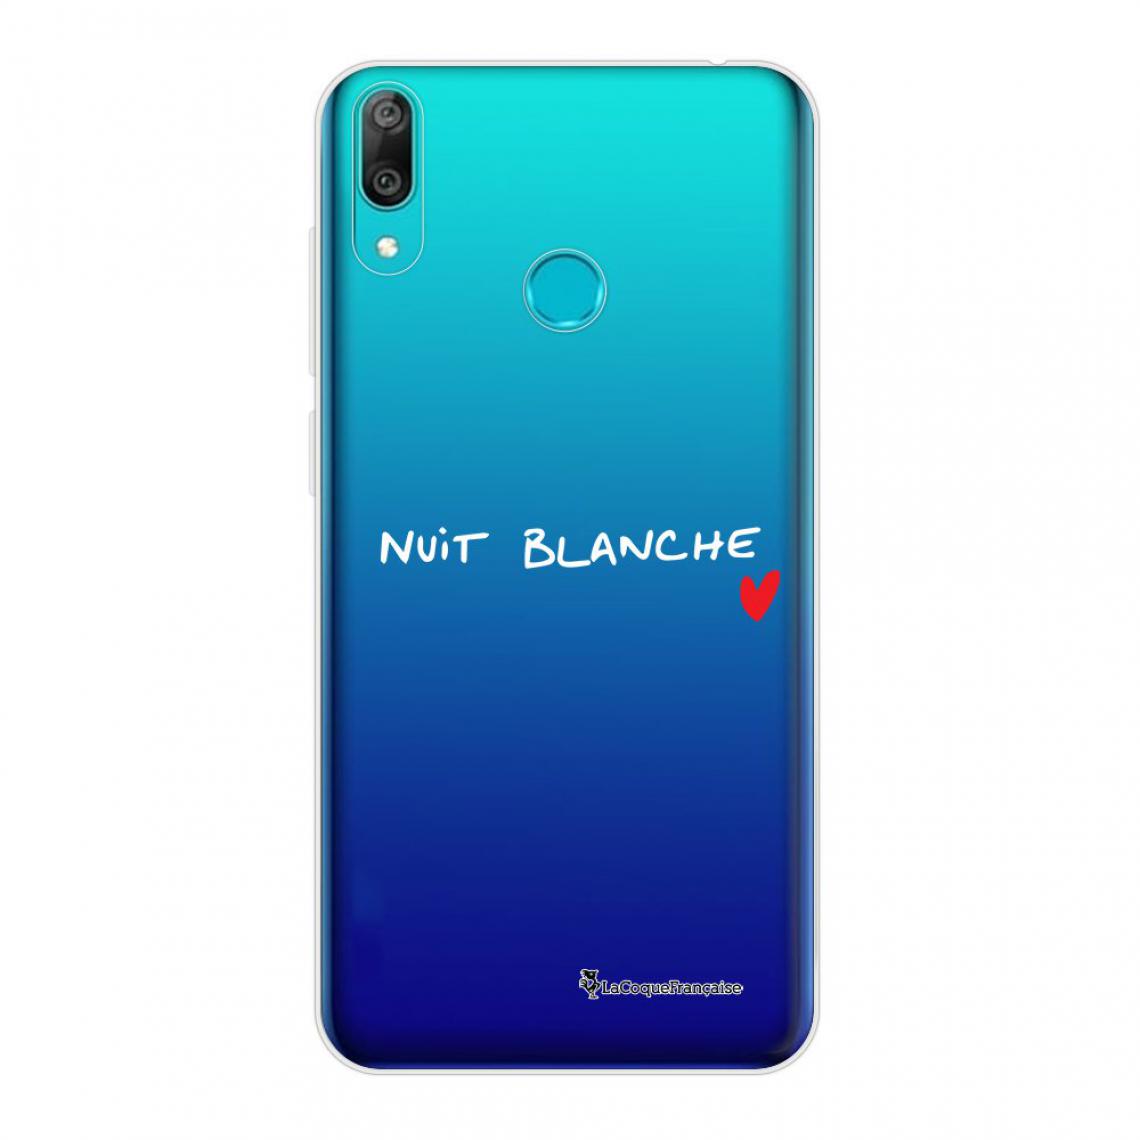 La Coque Francaise - Coque Huawei Y7 2019 360 intégrale avant arrière transparente - Coque, étui smartphone